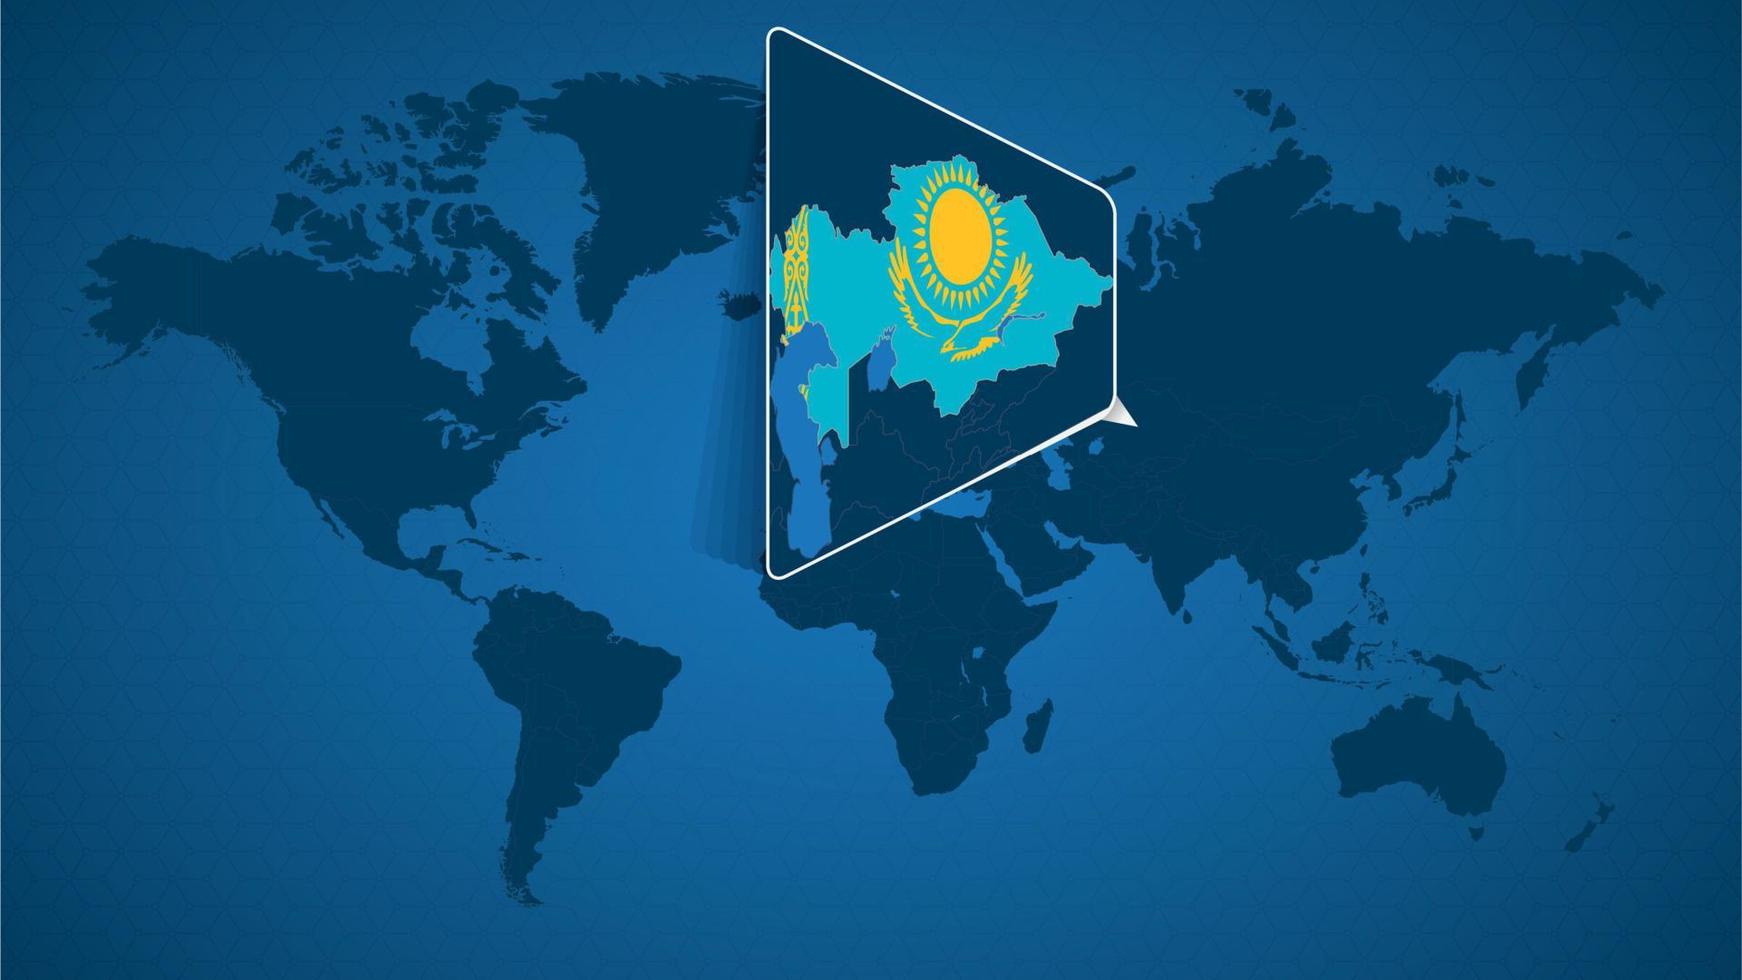 mappa del mondo dettagliata con mappa ingrandita appuntata del kazakistan e dei paesi vicini. vettore